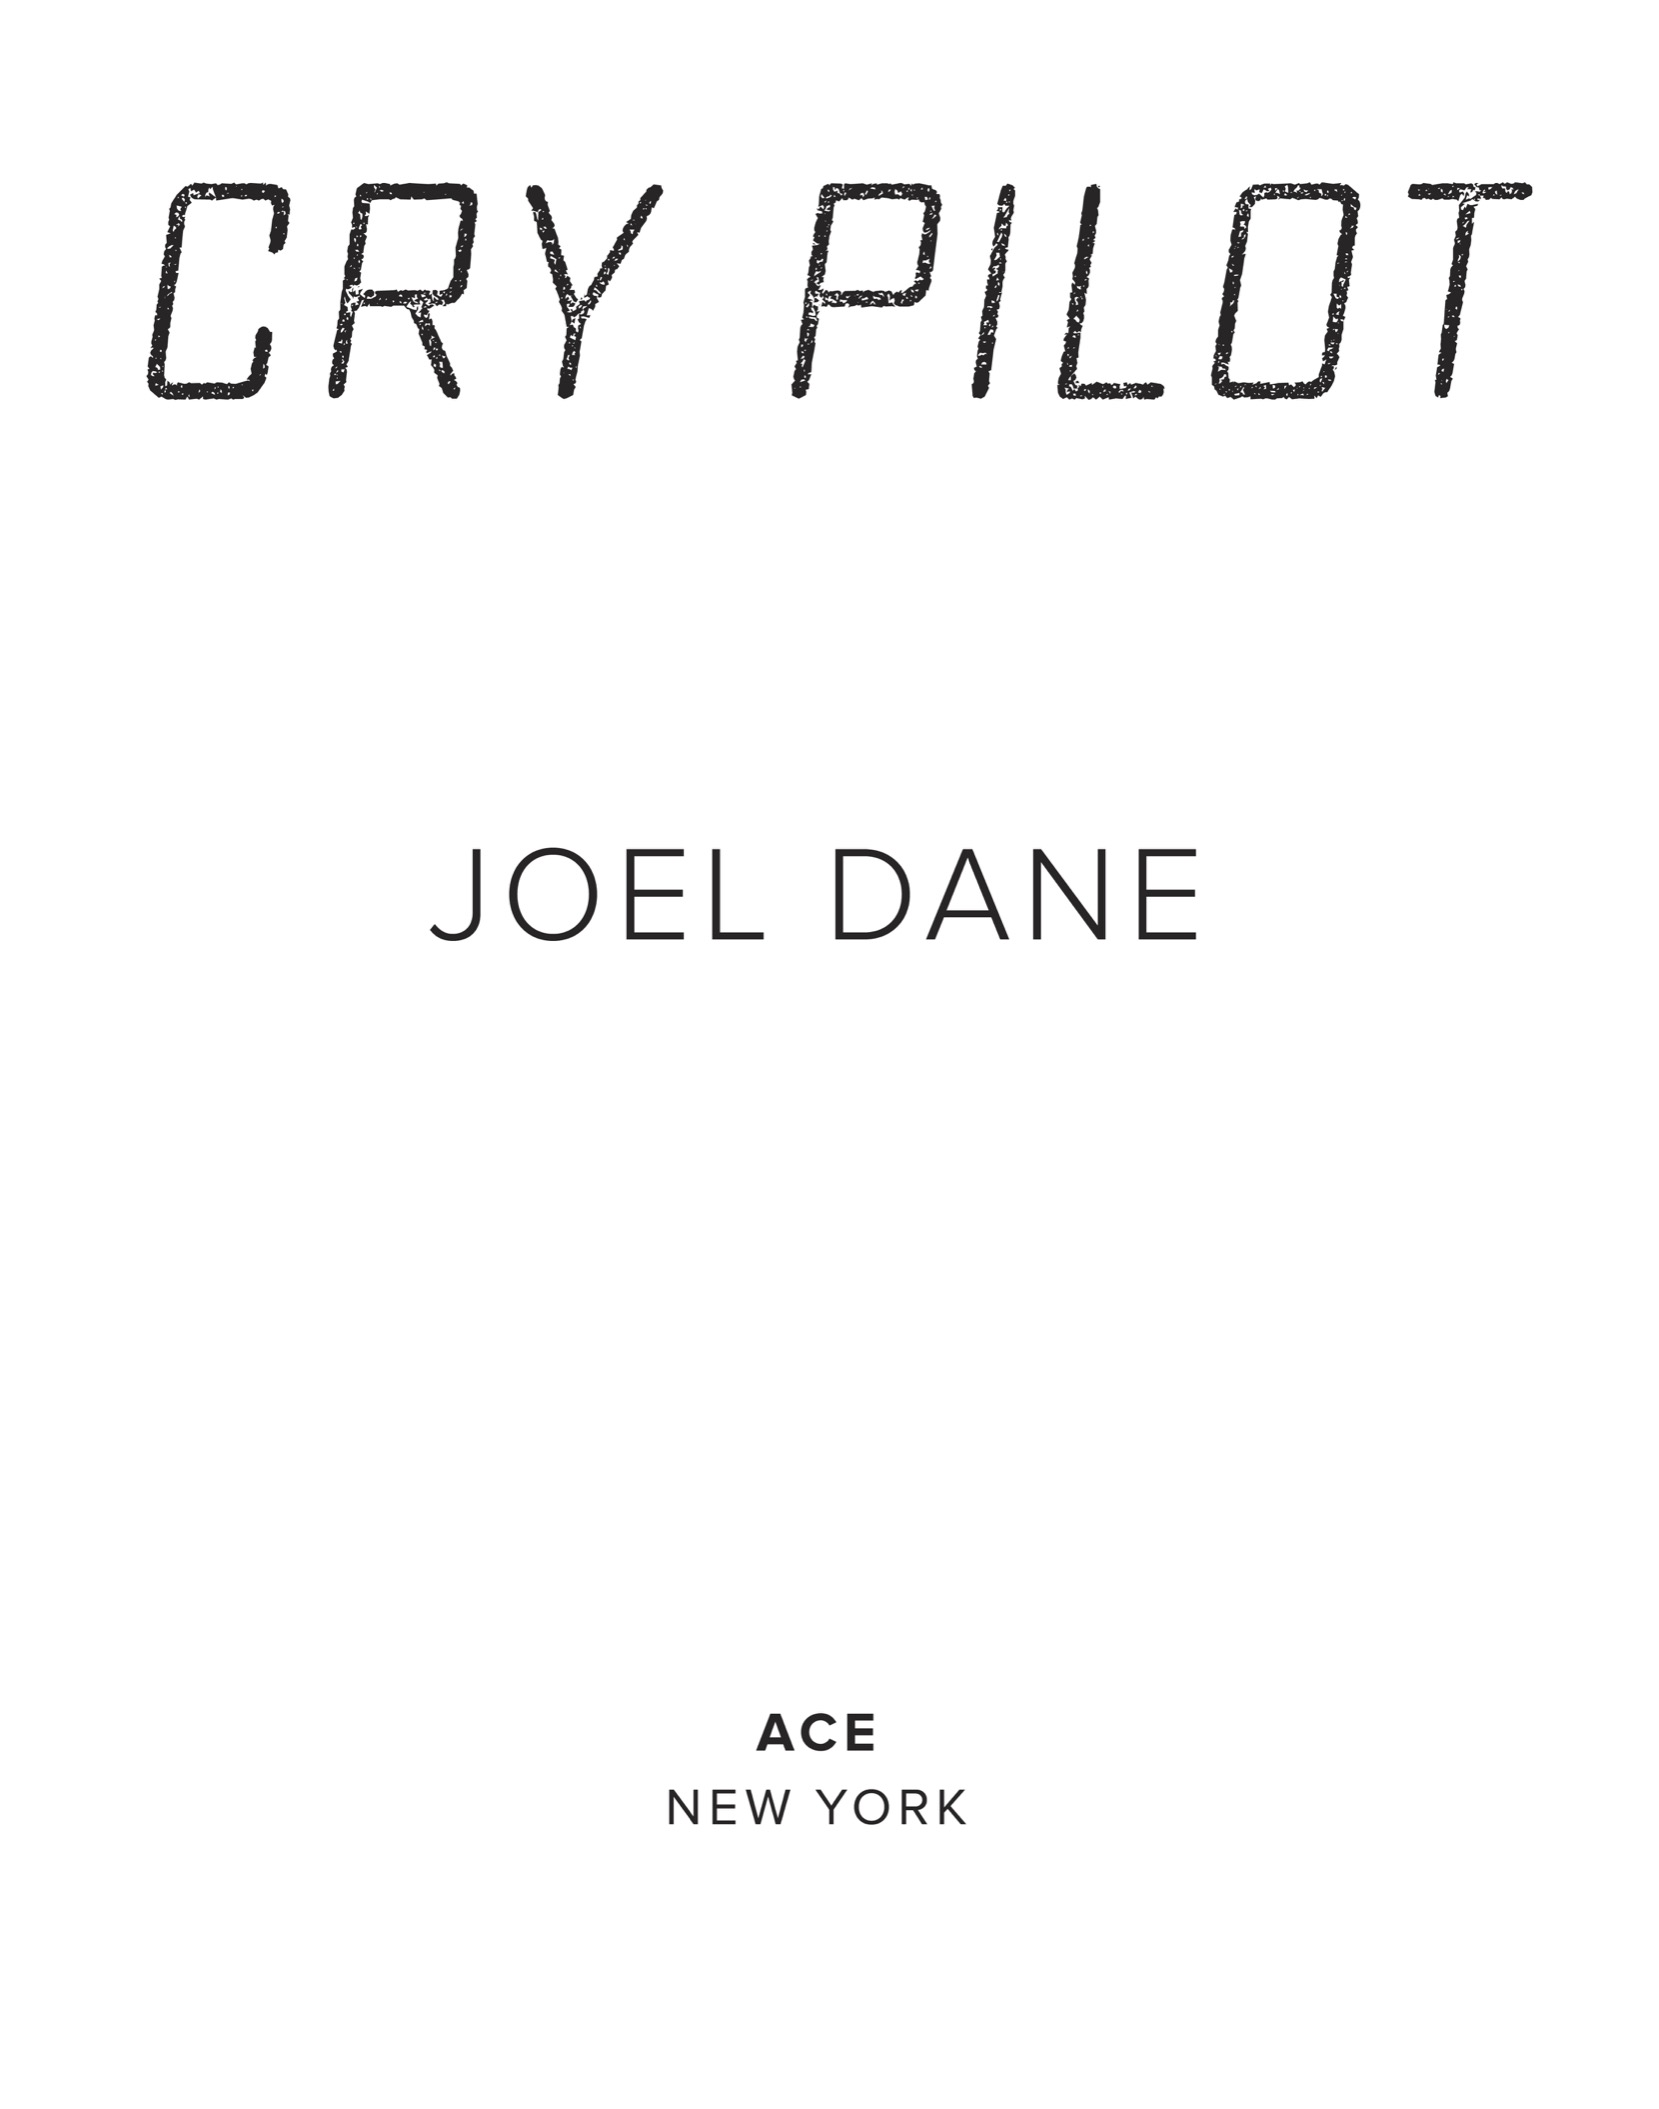 Cry Pilot